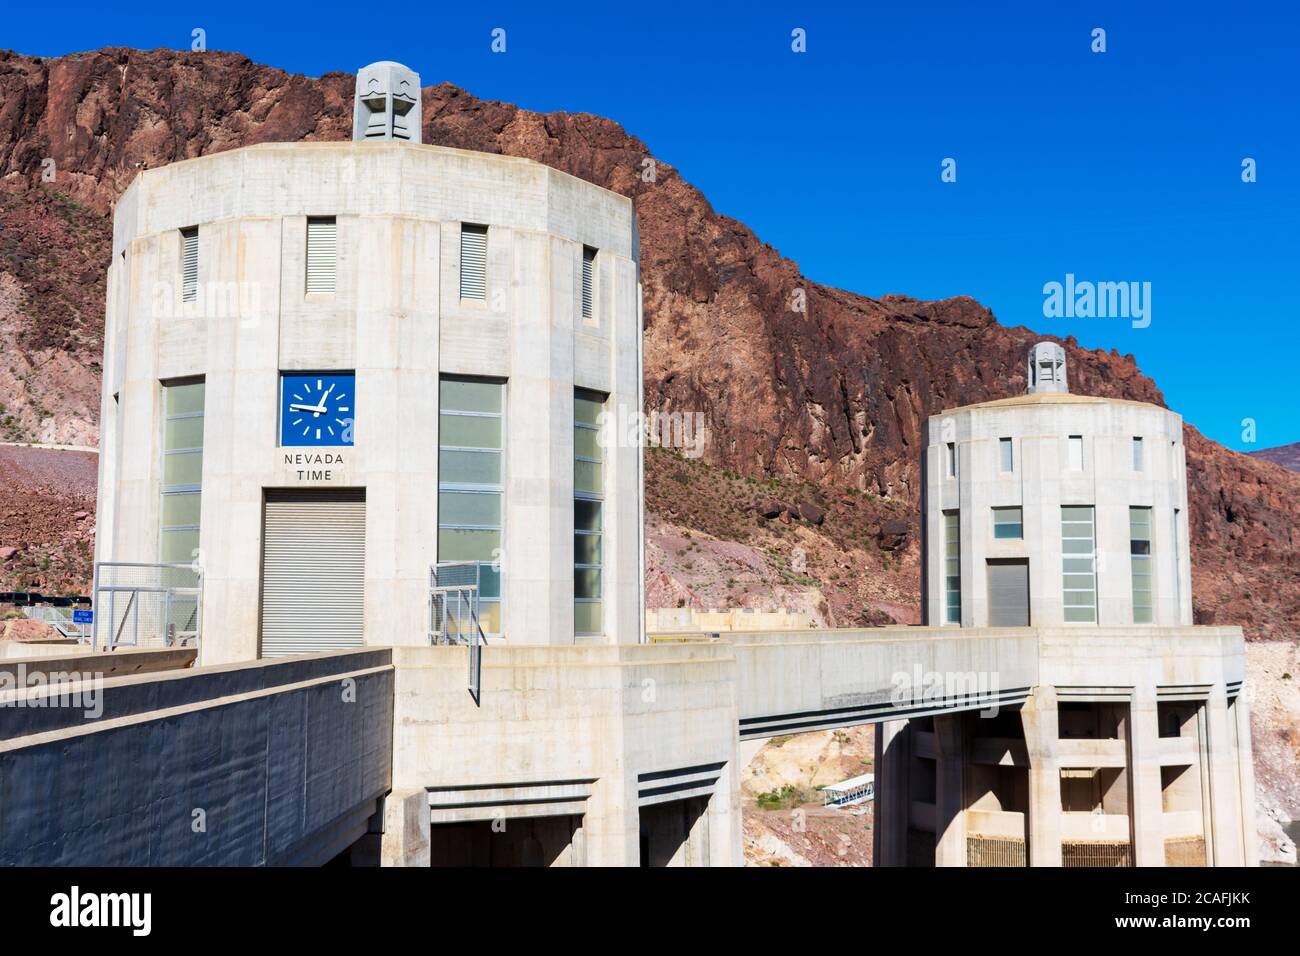 Zwei Wasseraufnahmetürme auf der Nevada-Seite des historischen Hoover Dam. Eine Uhr, die Nevada Zeit anzeigt - Las Vegas, Nevada, USA - 2020 Stockfoto